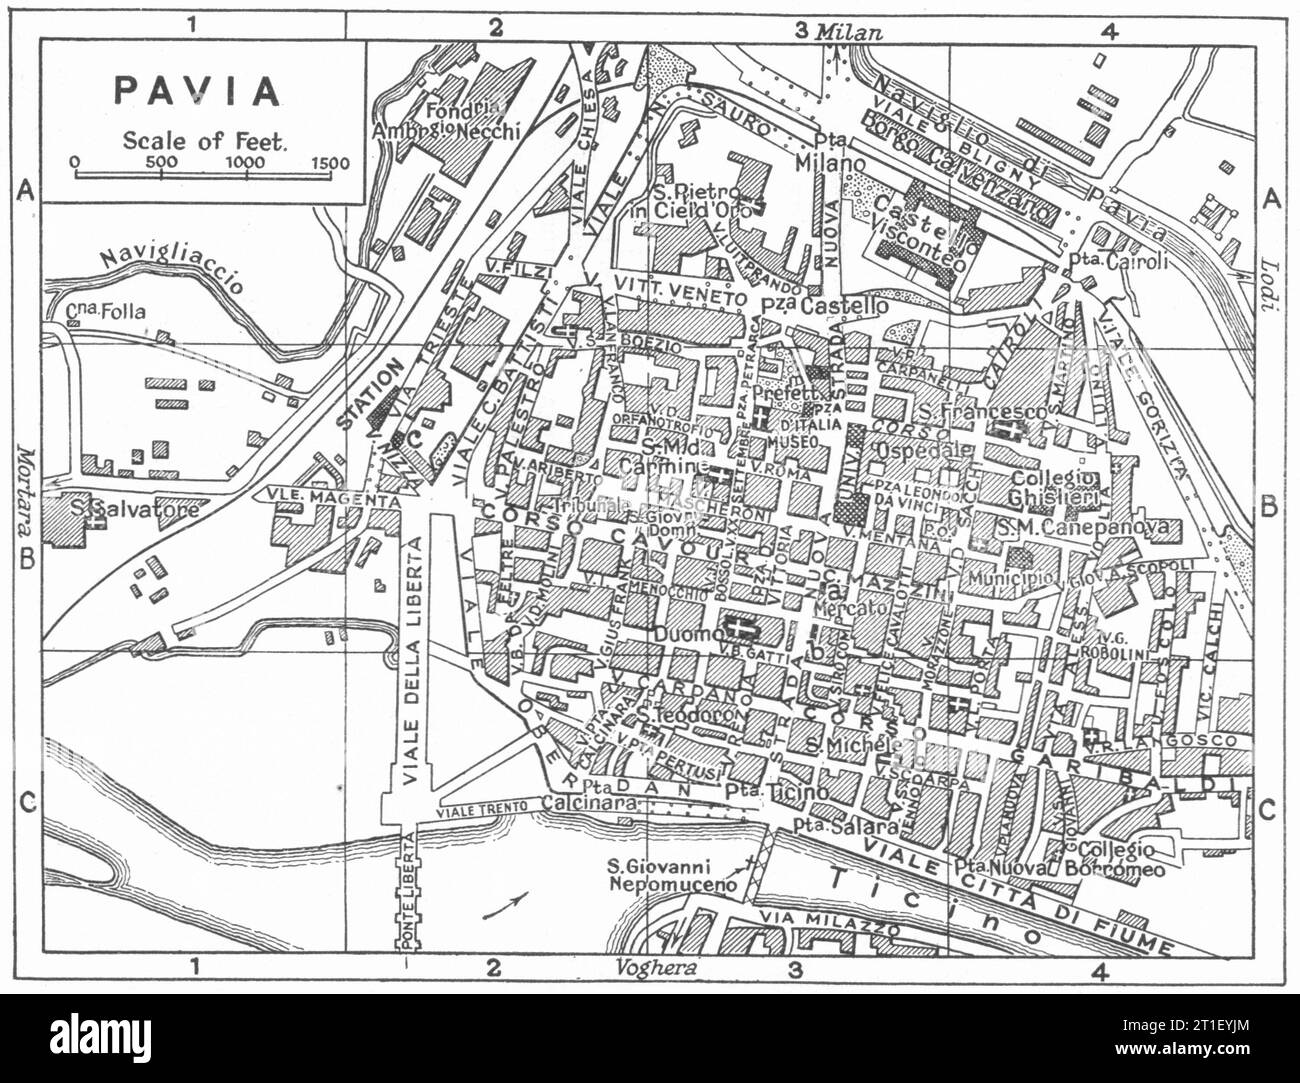 Piano città DI PAVIA. Italia 1953 vecchia mappa d'epoca Foto Stock